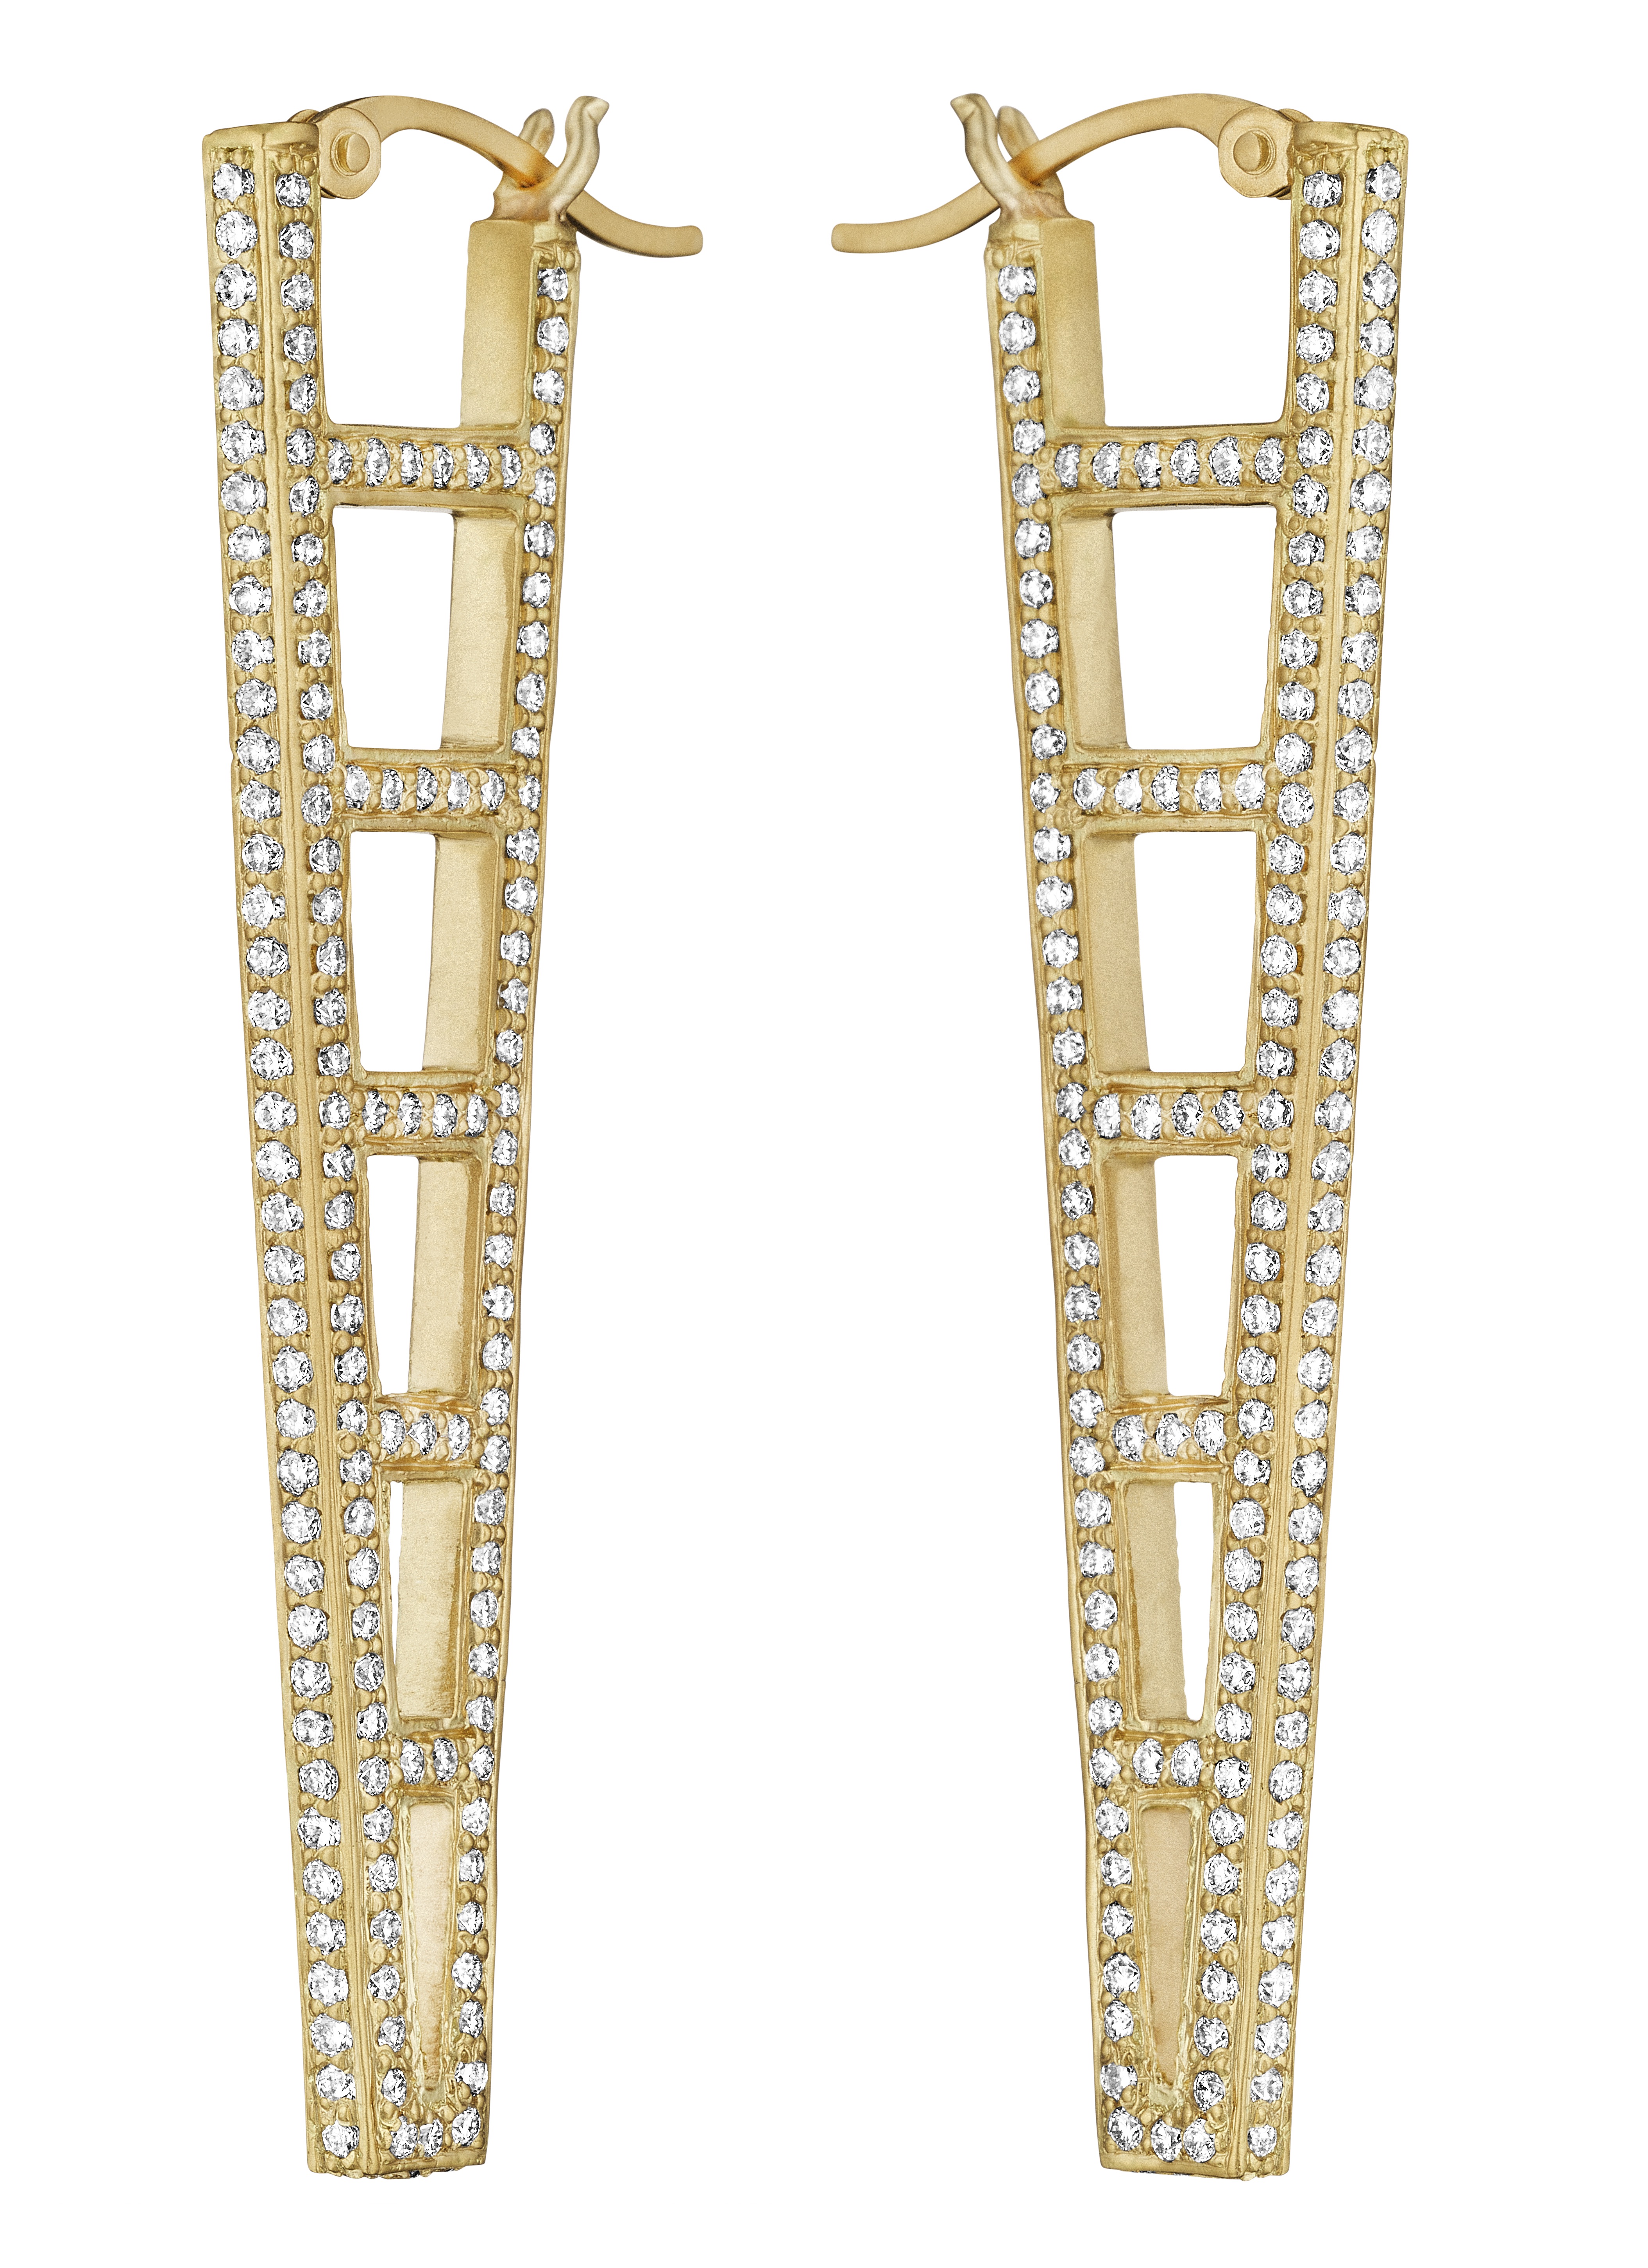 Doryn Wallach diamond ladder earrings | JCK On Your Market